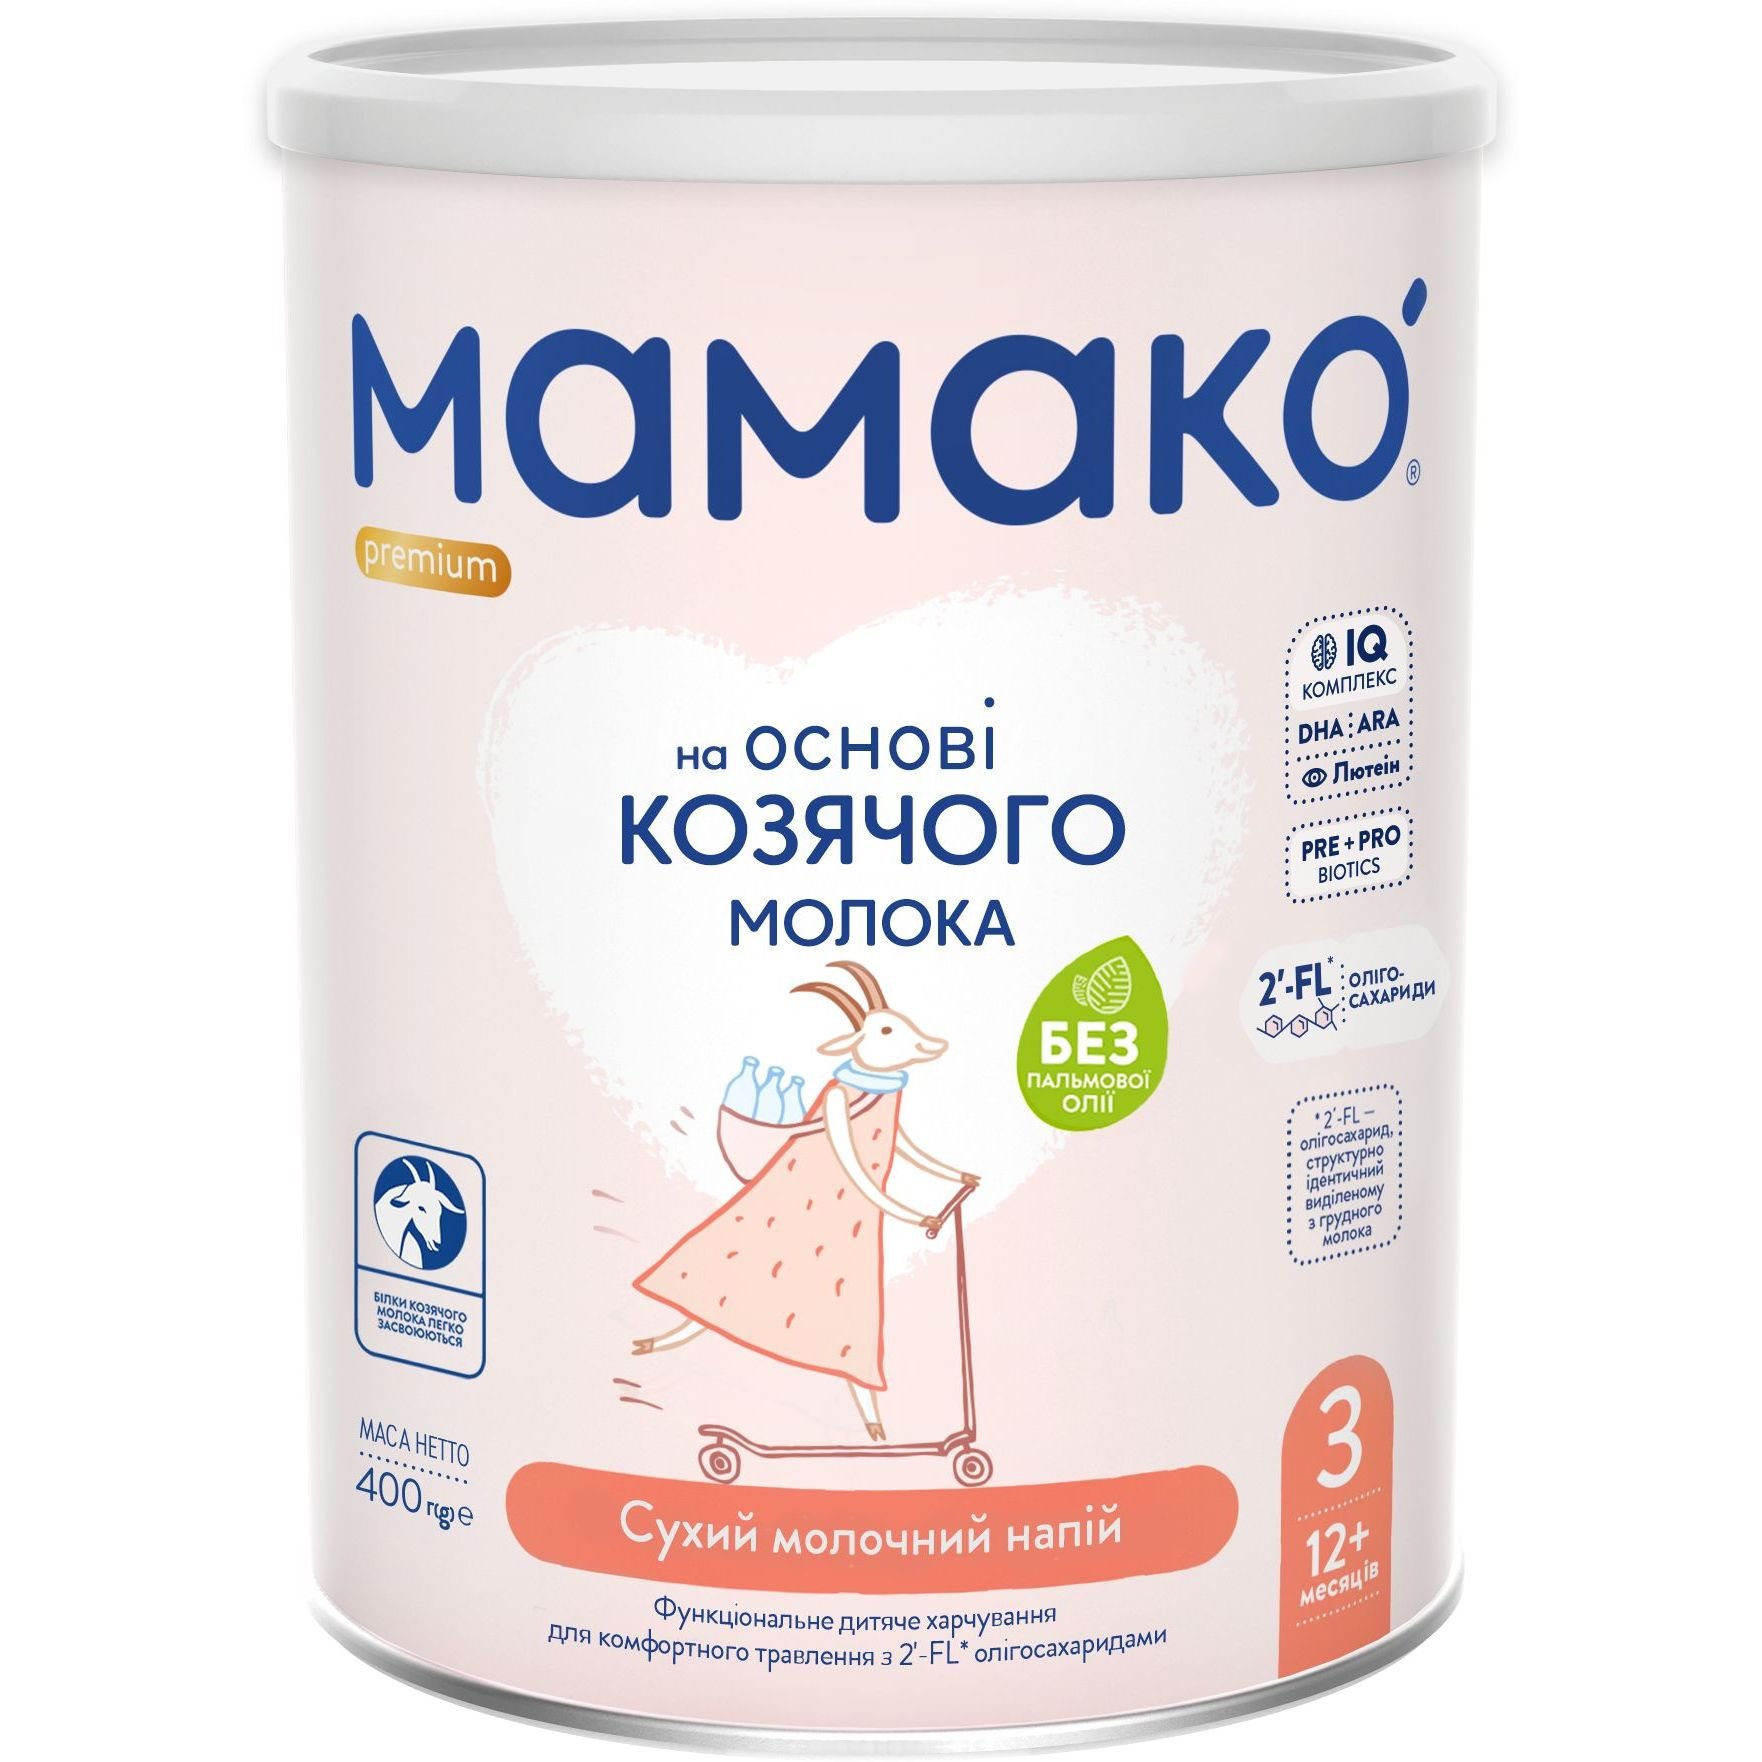 Сухой молочный напиток на основе козьего молока МАМАКО Premium 3, 400 г - фото 1